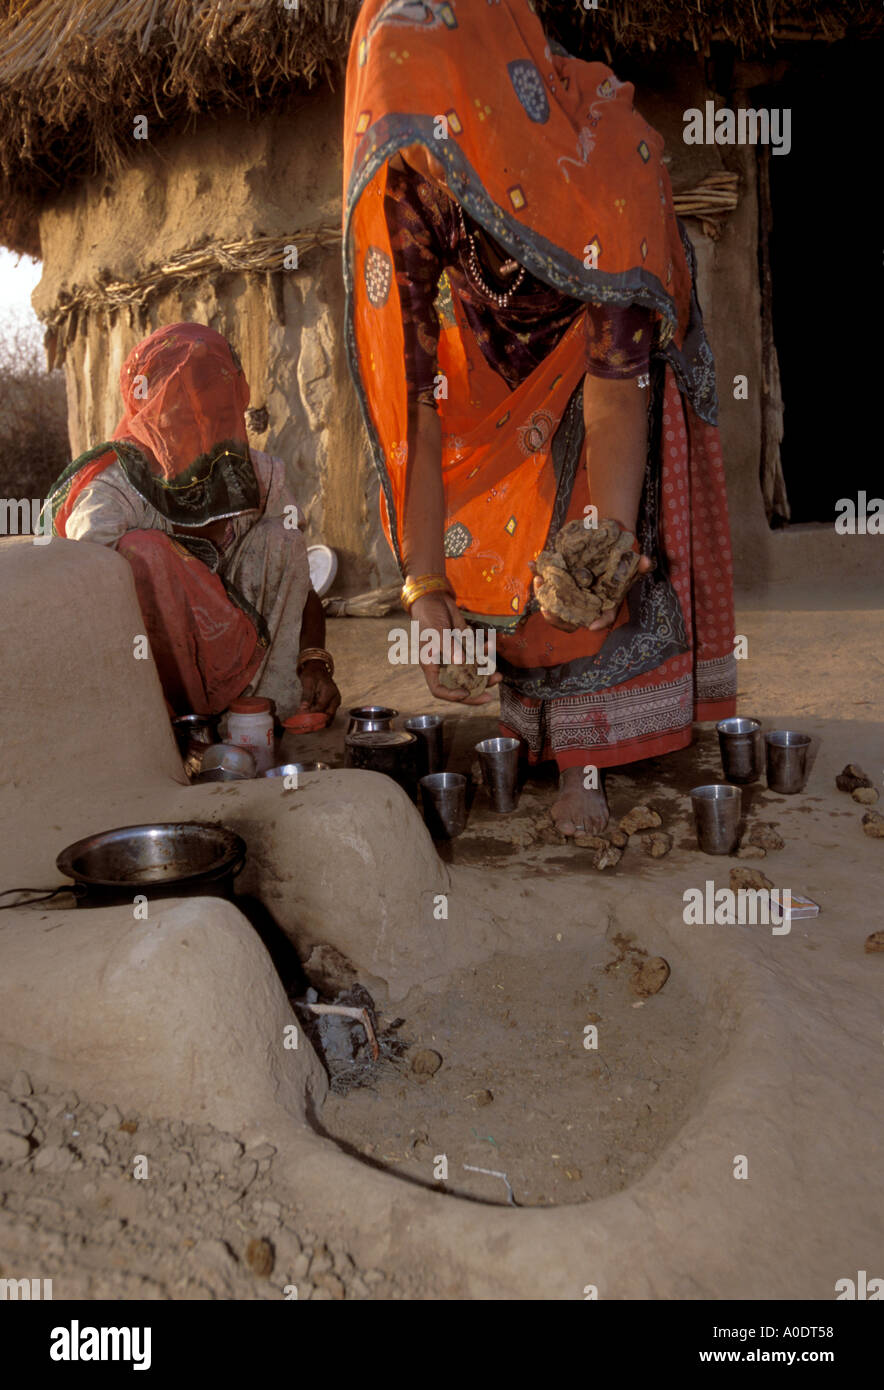 La cuisine Les femmes autochtones Bishnoi désert du Rajasthan Inde Banque D'Images